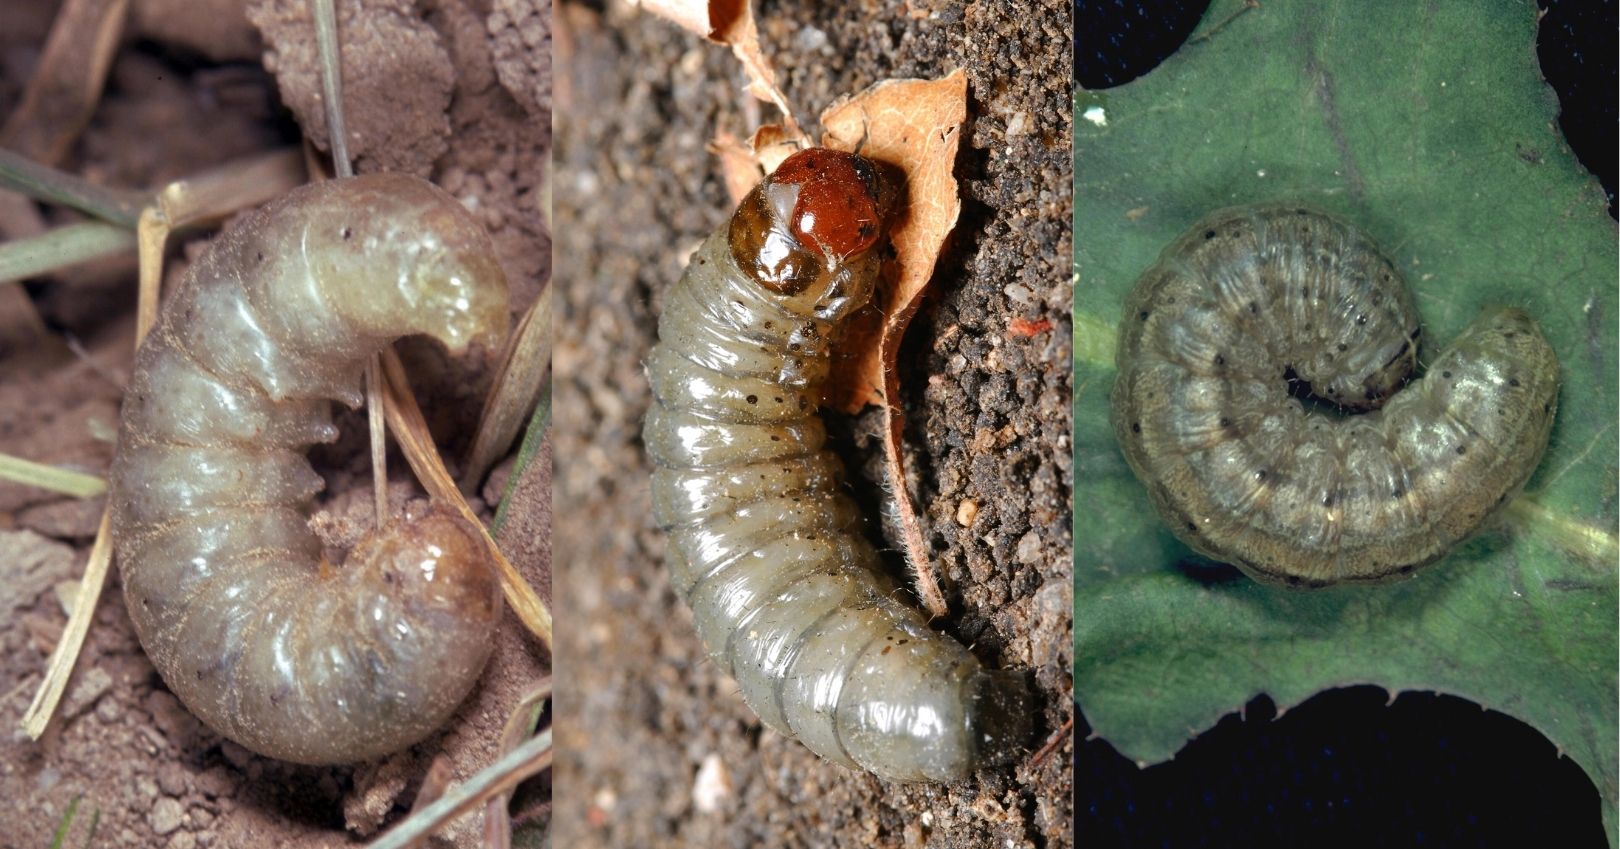 Western Pale Cutworm, Glassy Cutworm, and Army Cutworm (bugwood.org)